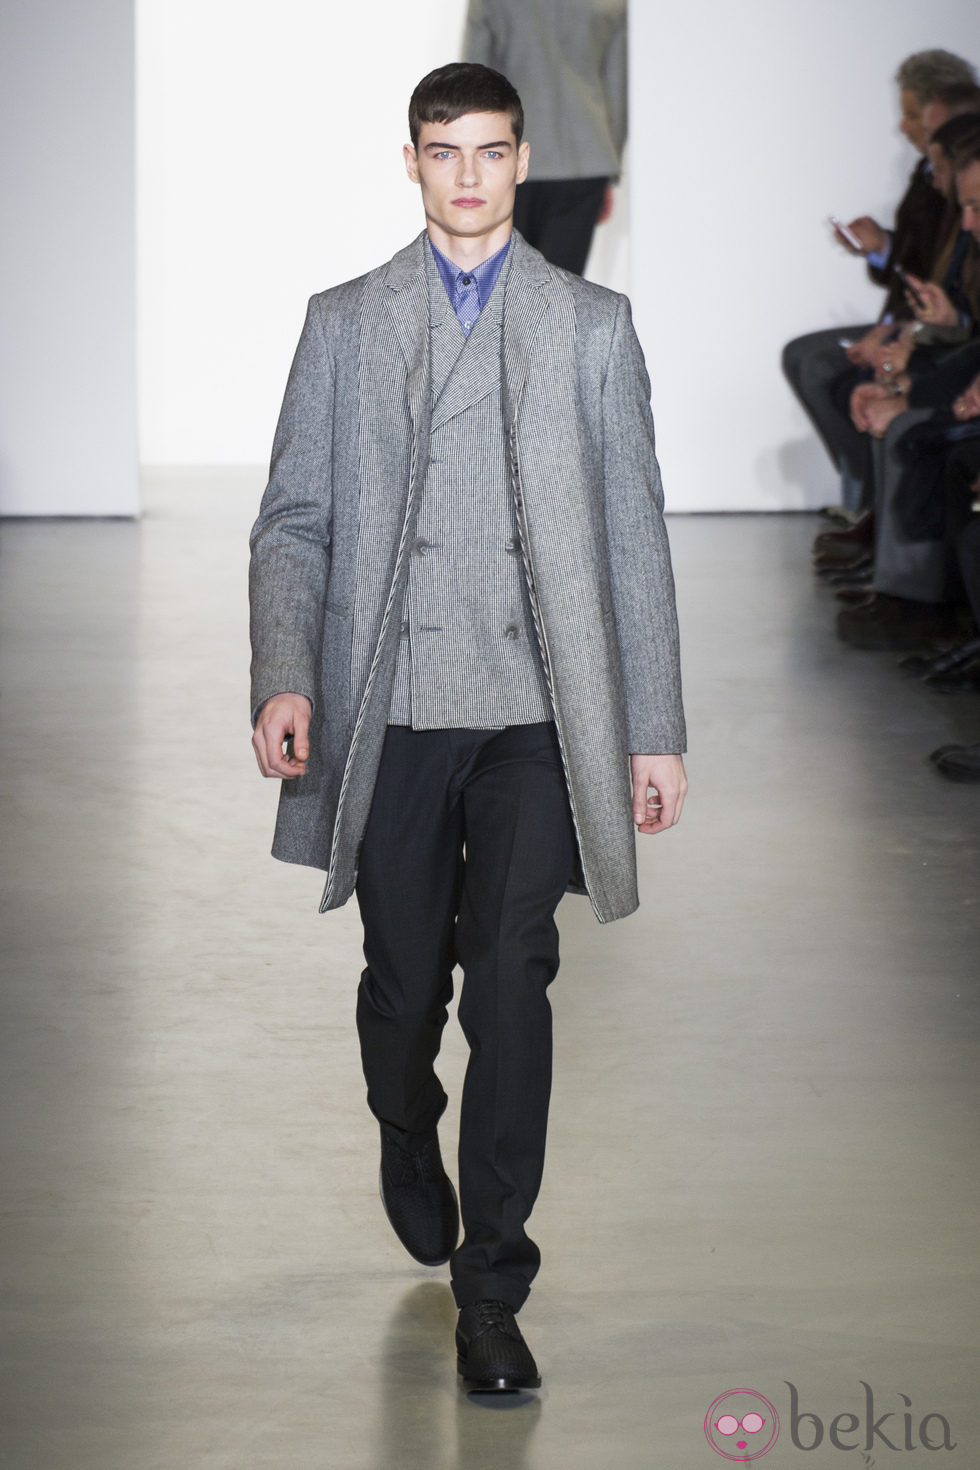 Abrigo gris con chaleco a juego de Calvin Klein para la semana de la Moda de Milán otoño/invierno 2013/2014